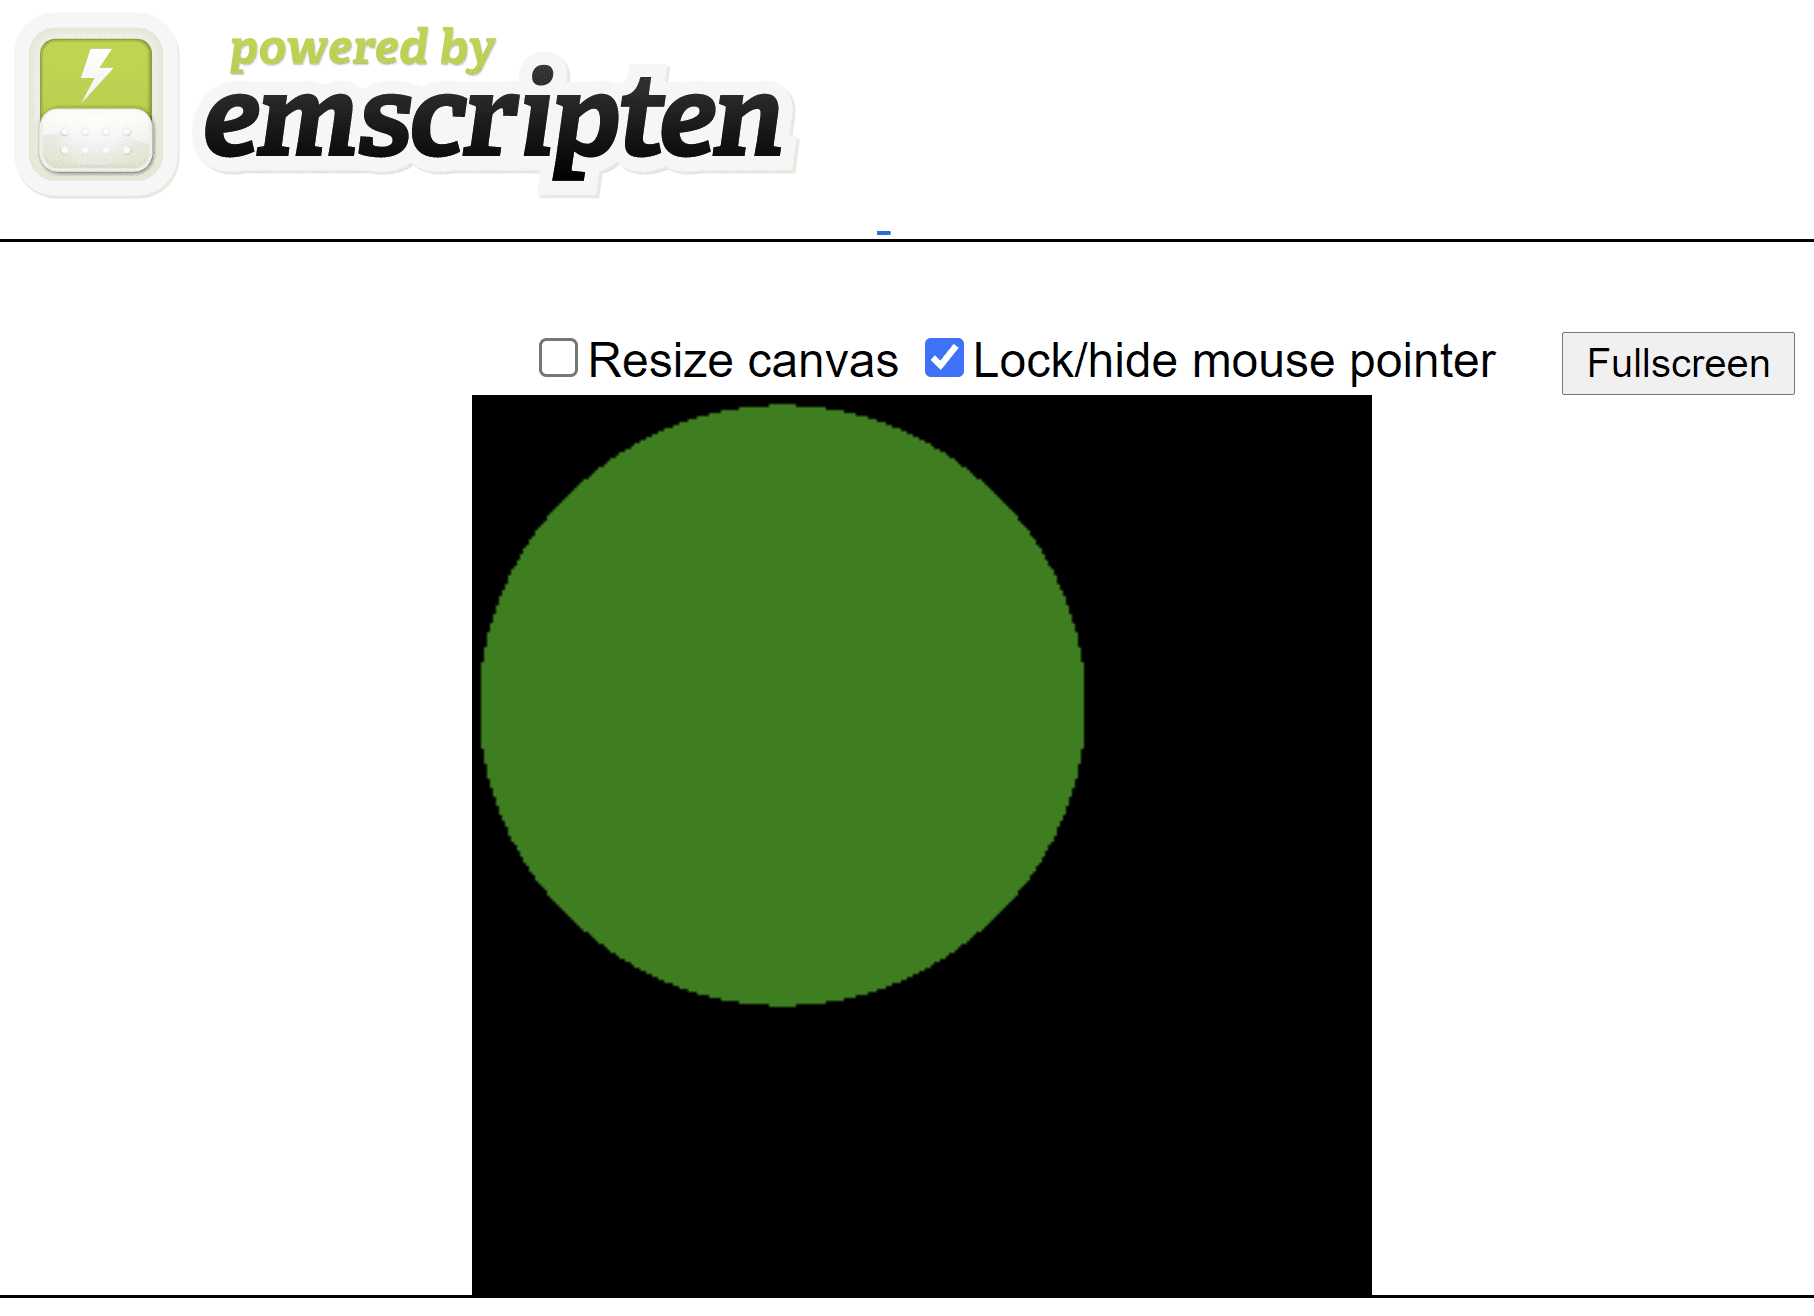 Emscripten से बनाया गया एचटीएमएल पेज, जो काले रंग के स्क्वेयर कैनवस पर हरे रंग का गोला दिखाता है.